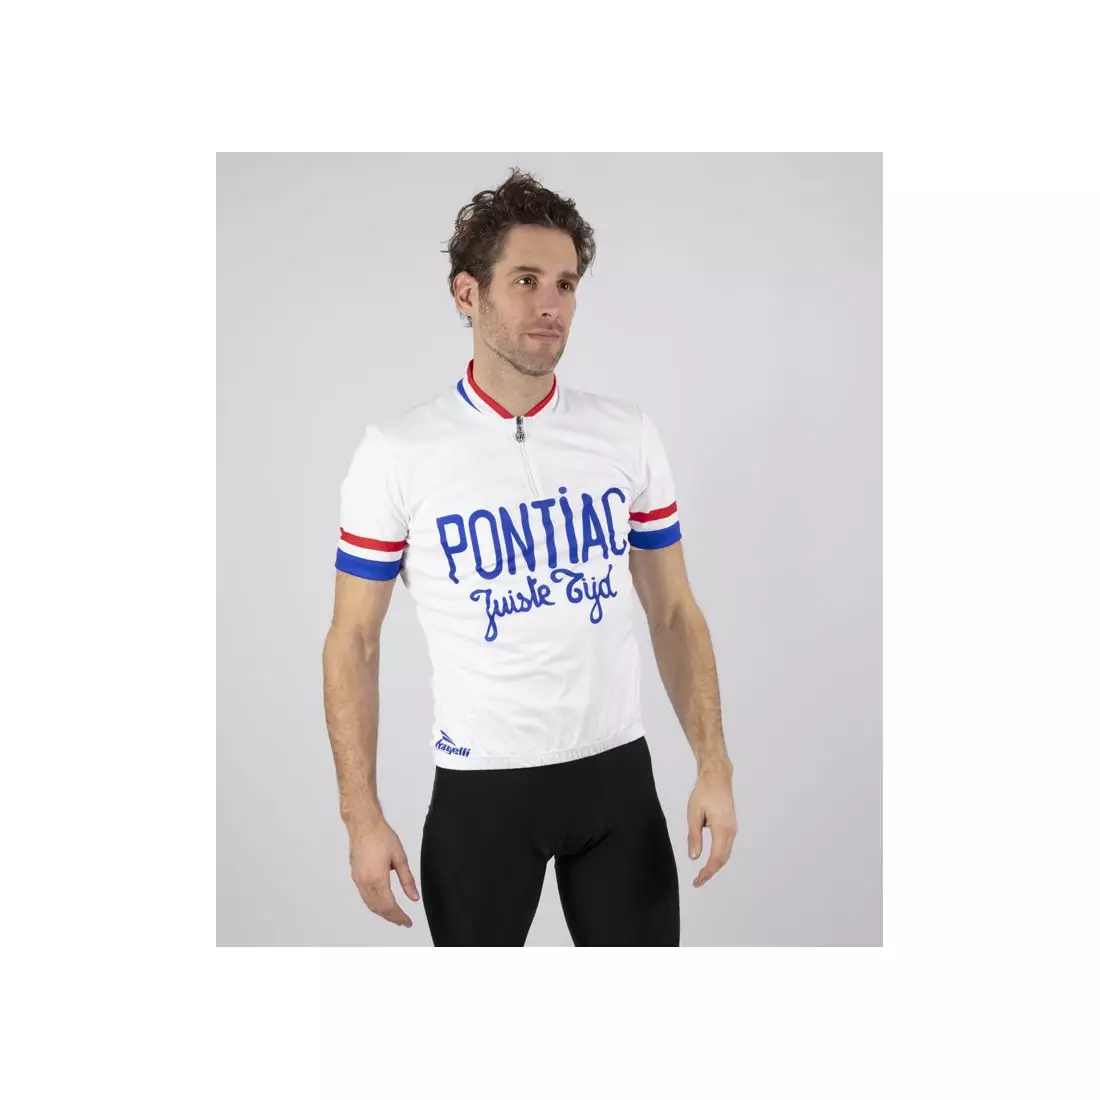 ROGELLI tricou pentru bărbați pentru biciclete PONTIAC white